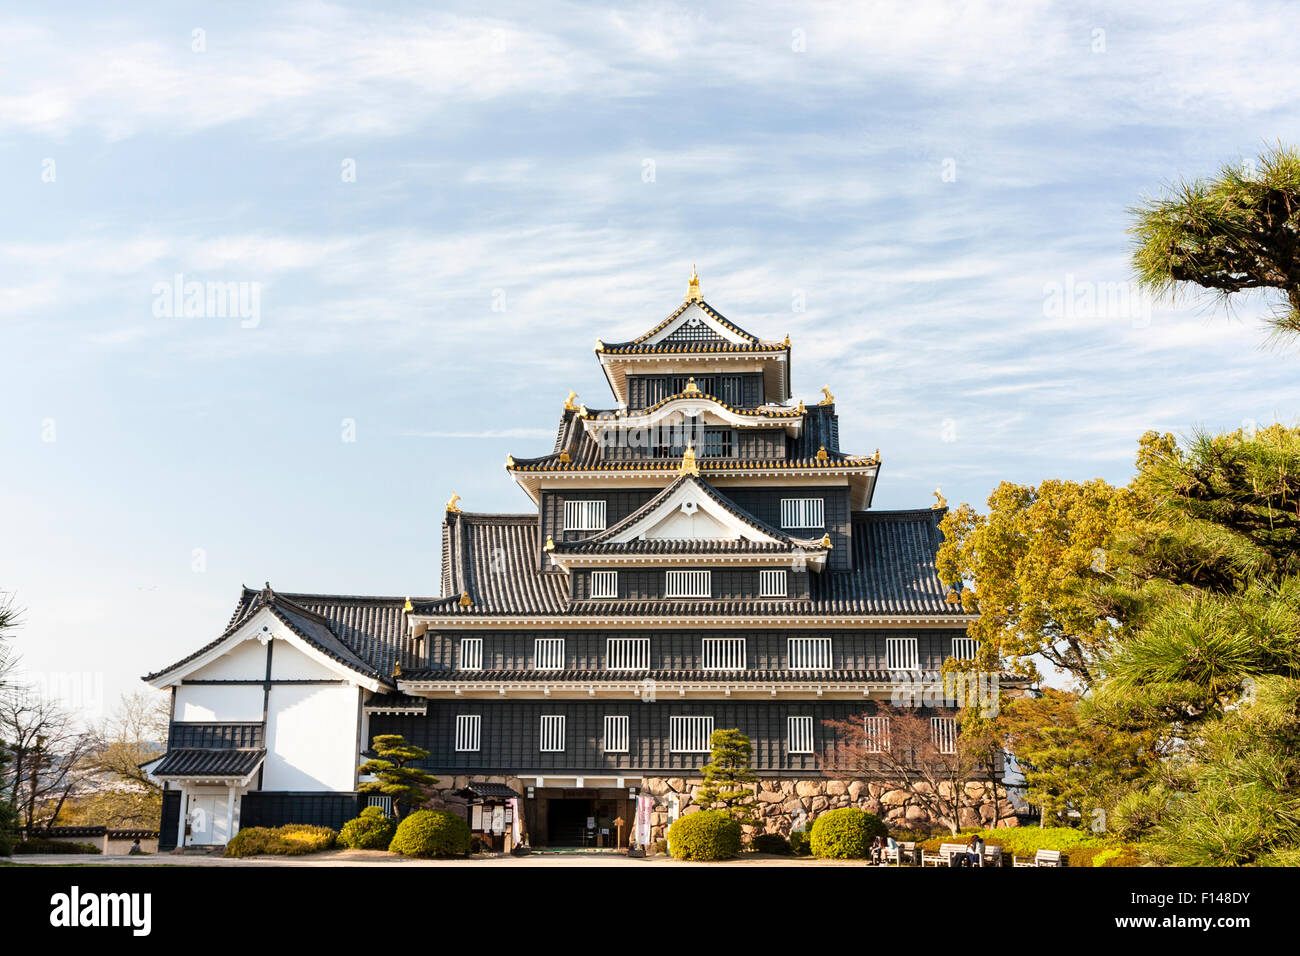 Der berühmte schwarze Krähe, karasujo, rekonstruierte Schloss halten von Okayama mit schwarzem Holz Bretter die Auskleidung der, 7-stöckiges Gebäude. Frühling, blauer Himmel. Stockfoto